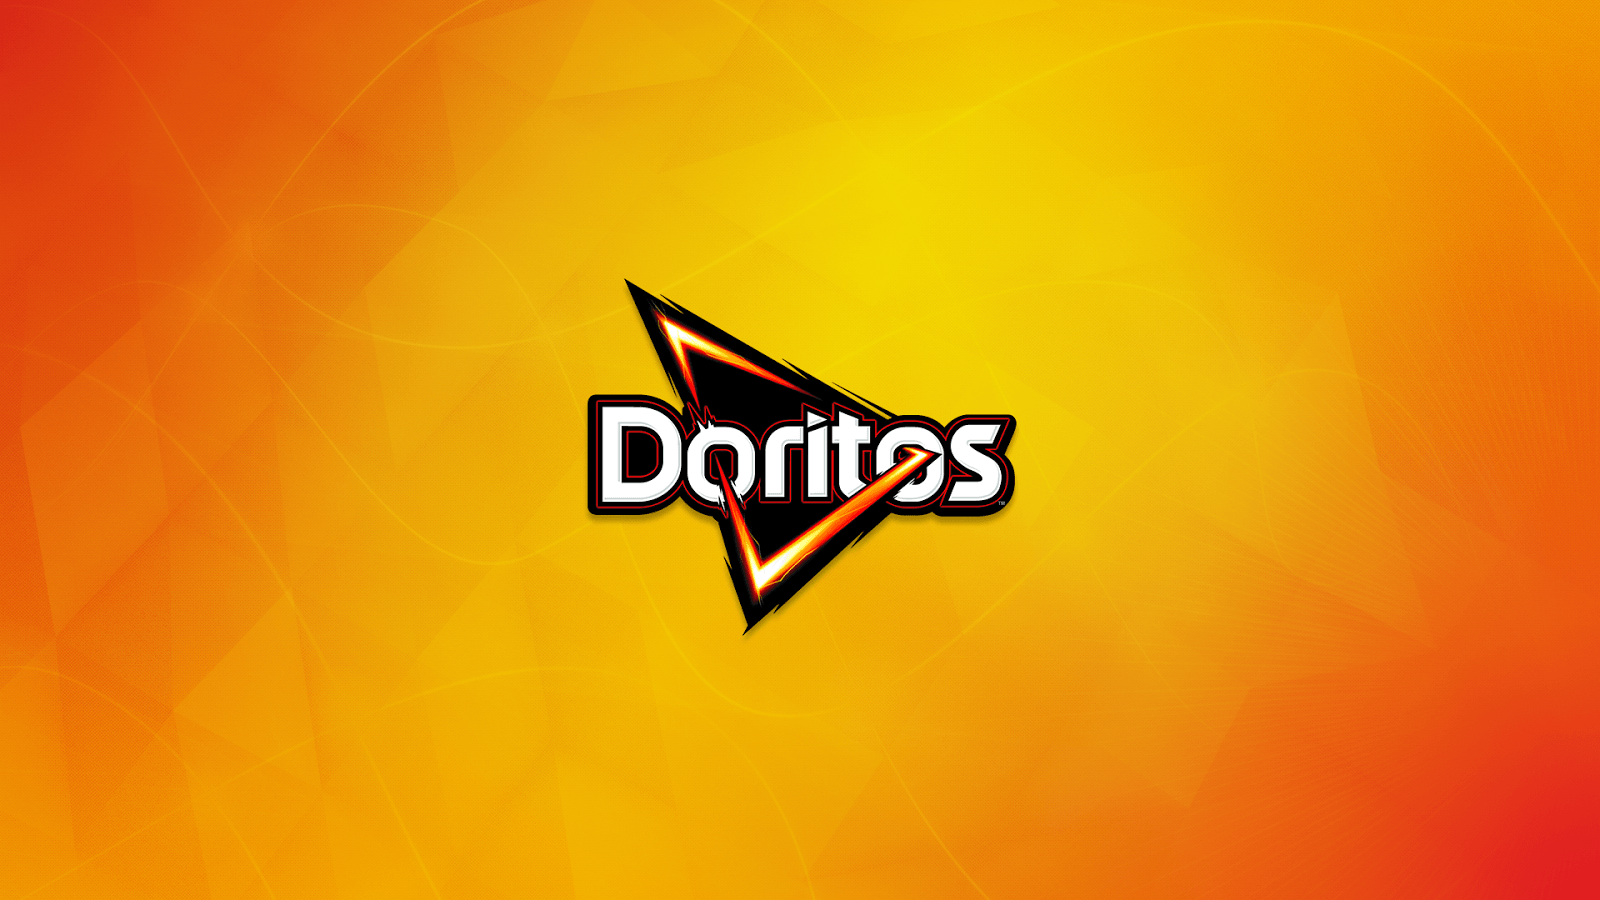 Doritos Wallpaper